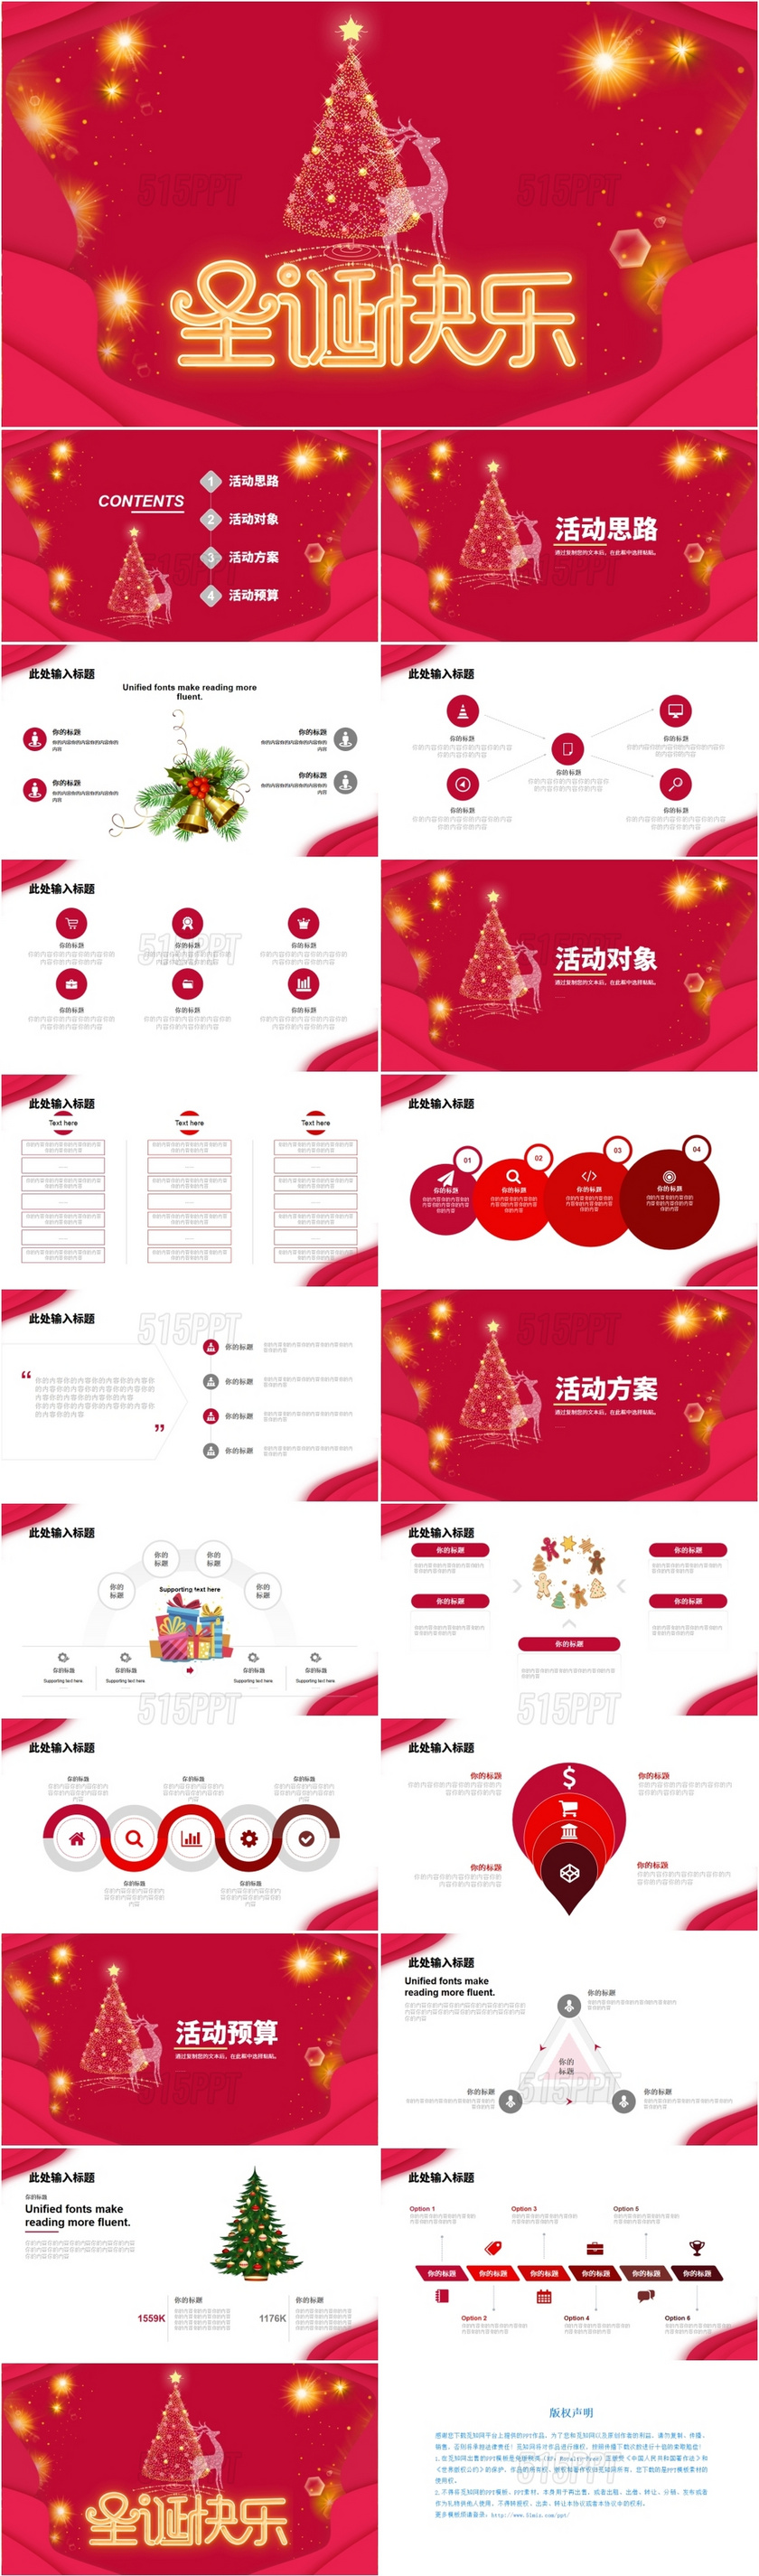 红色简约喜庆唯美梦幻圣诞节活动策划计划安排通用PPT模板